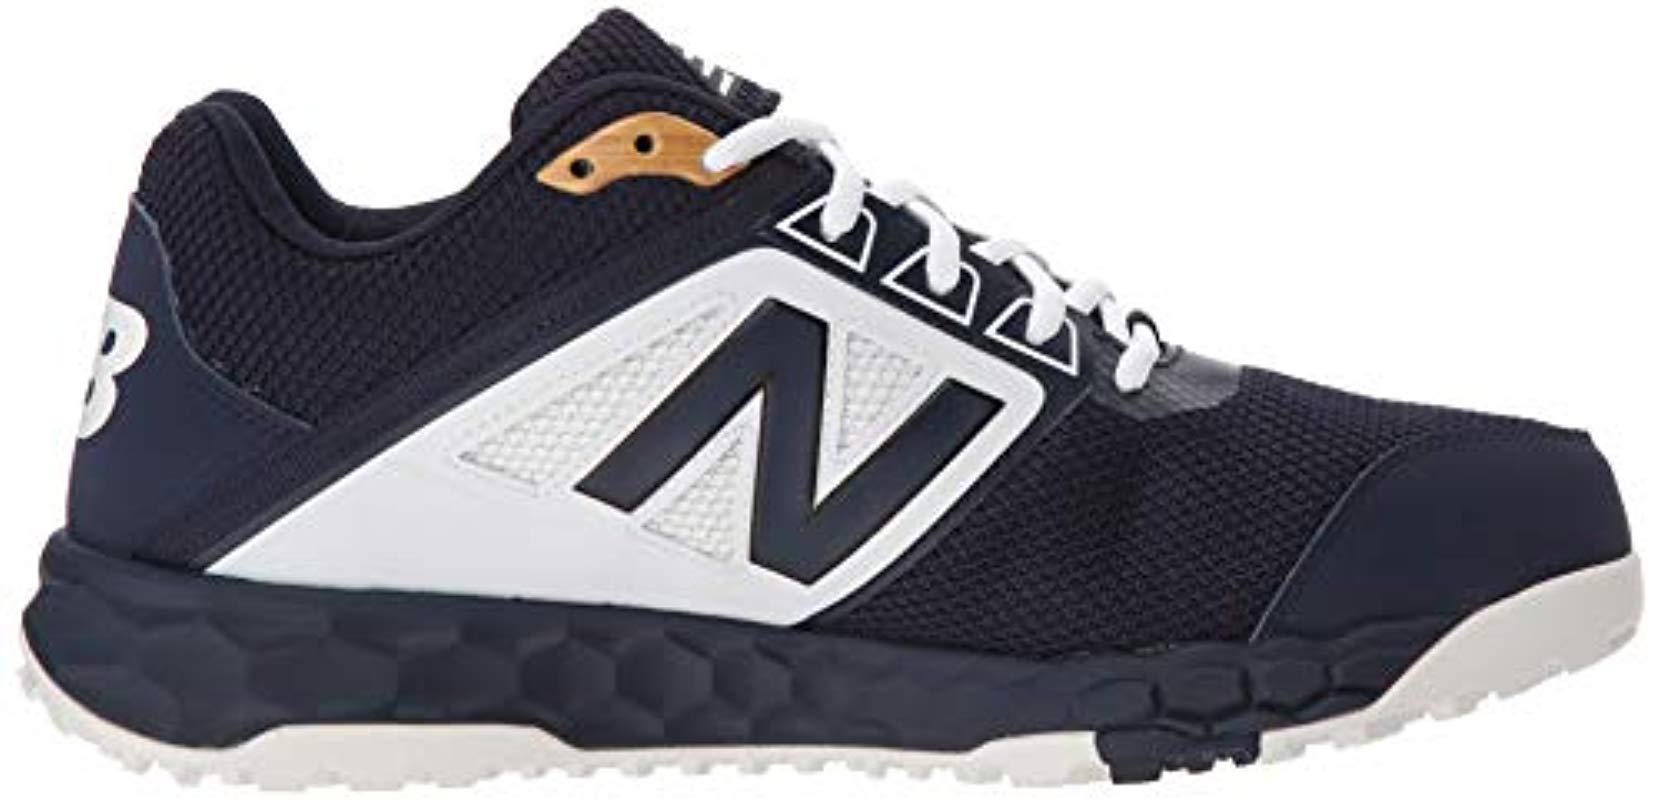 New Balance Rubber 3000v4 Turf Baseball Shoe in Navy/White (Blue) for ...